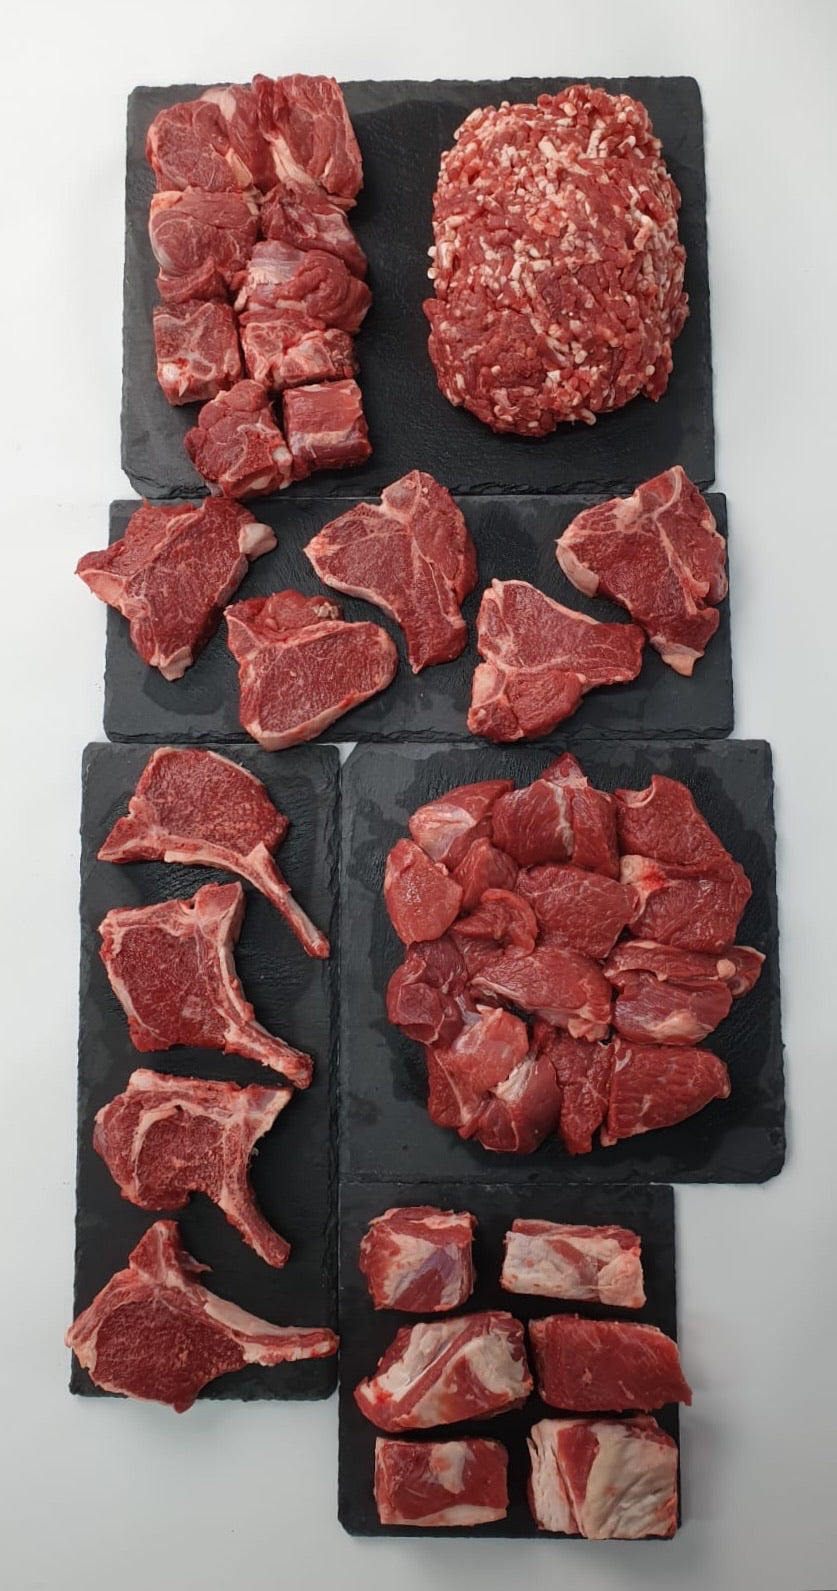 Halal Organic Lamb Half - Cut into Pieces (9-11kg gross)